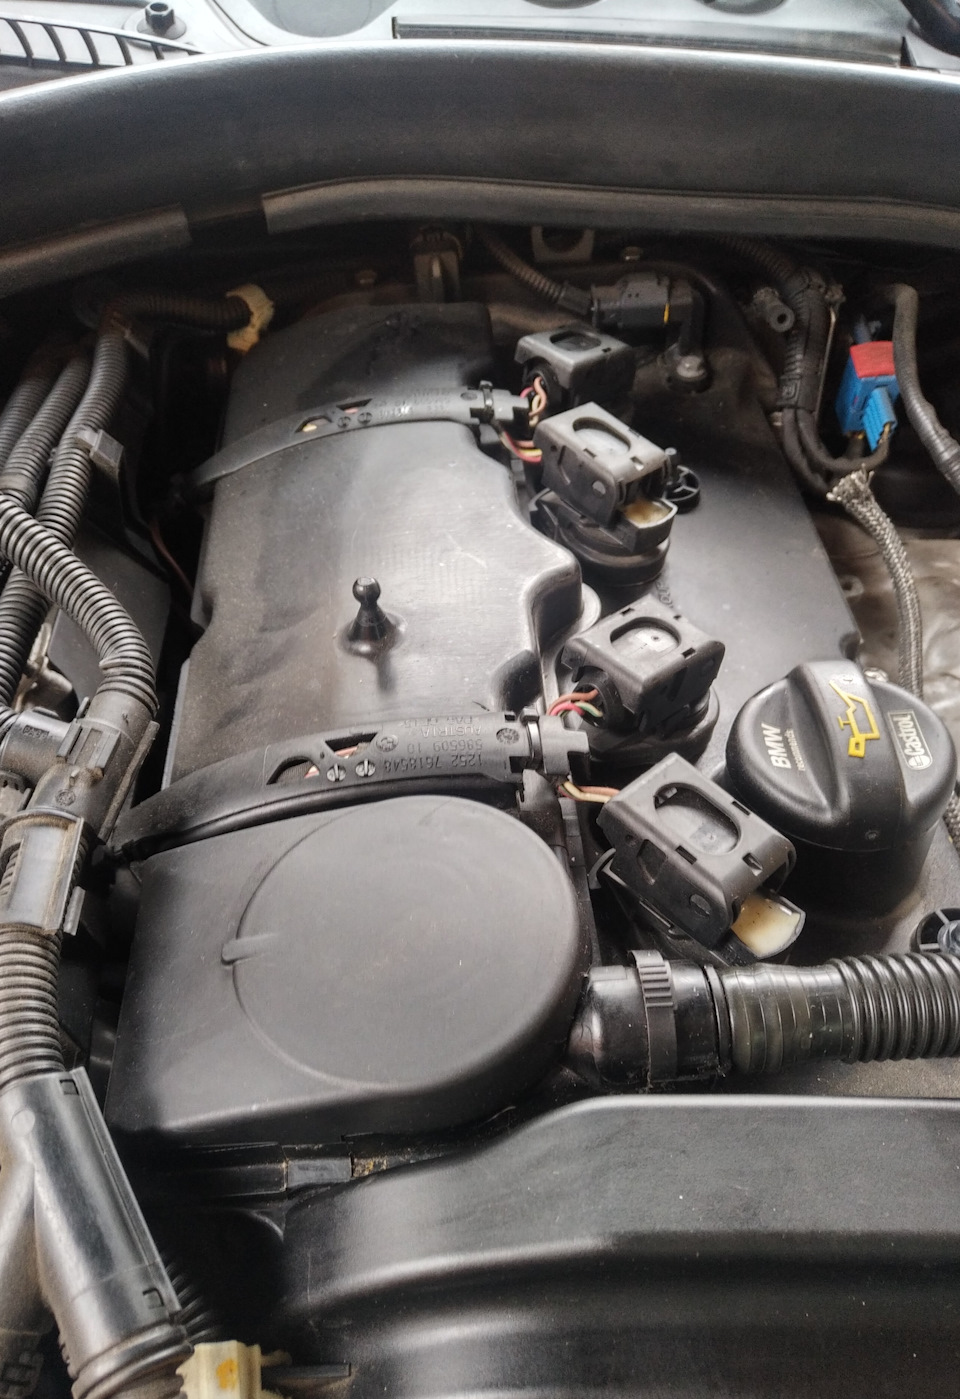 BMW X5 e53 - проблема с магнитолой